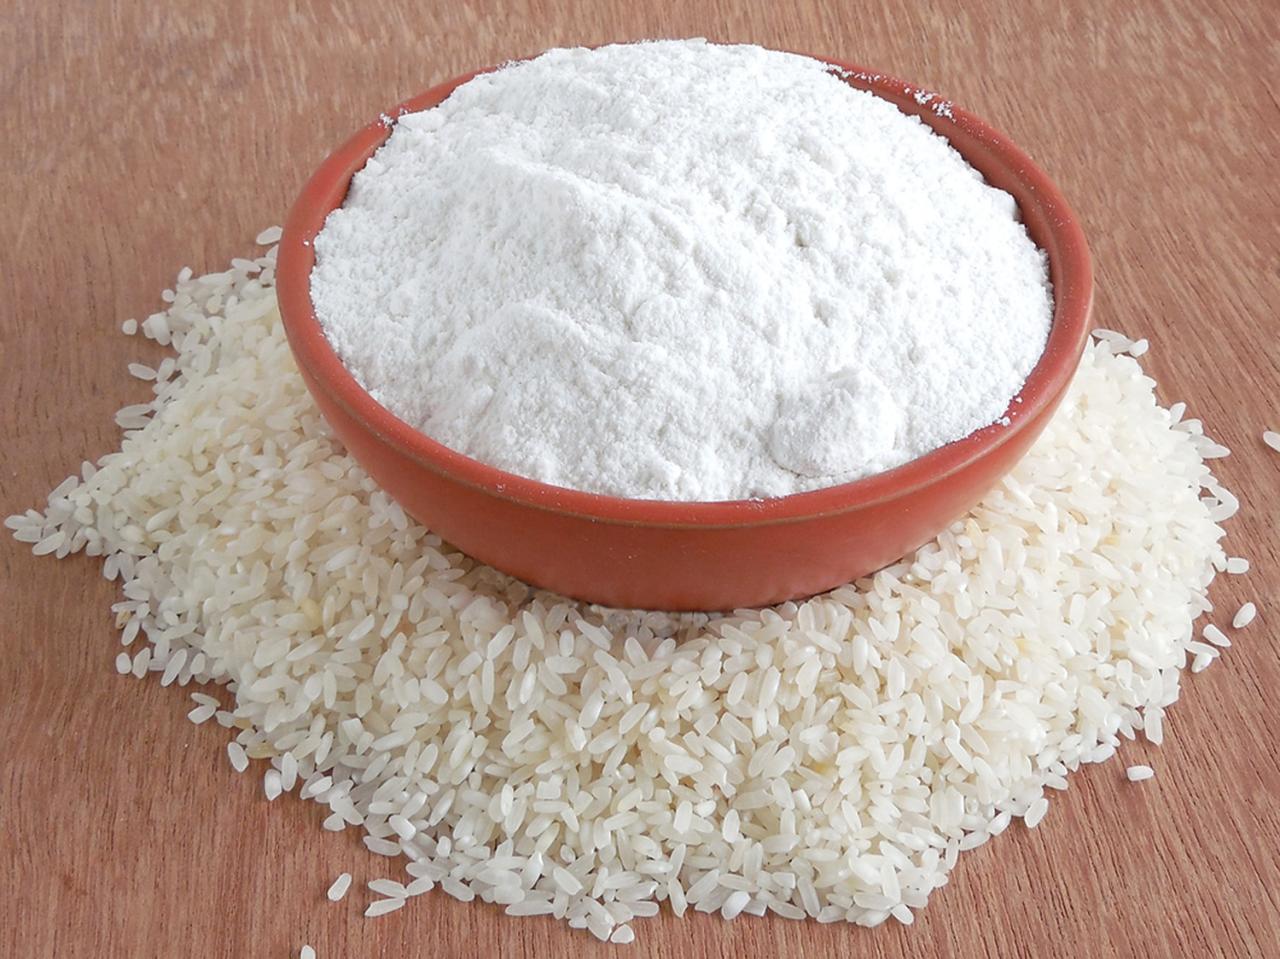 Apakah tepung beras sama dengan tepung ketan